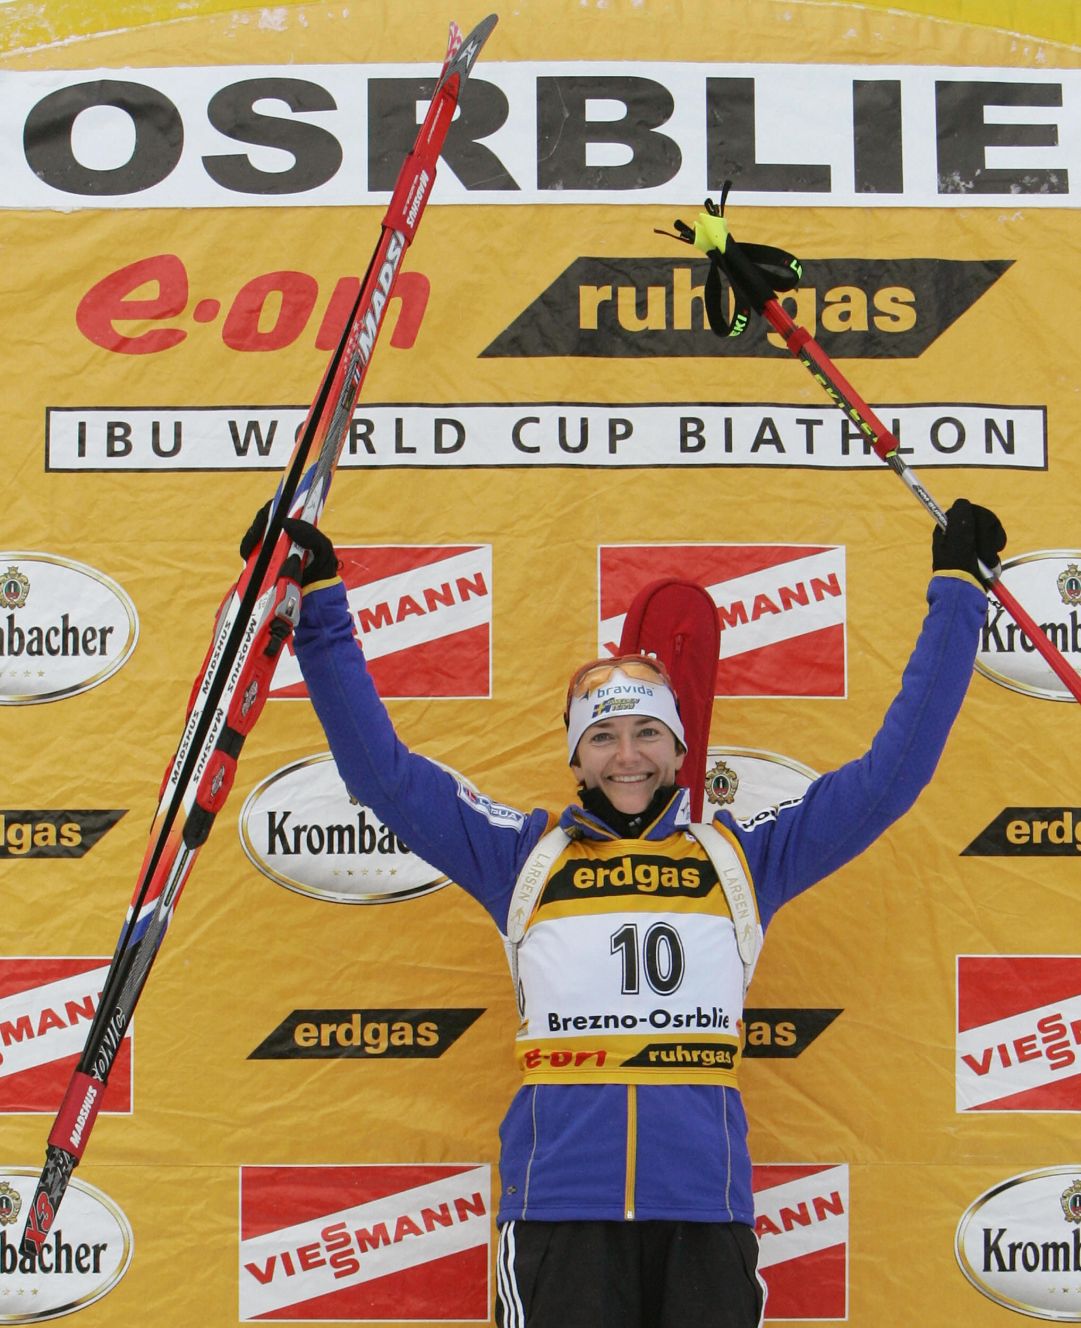 Anna Carin Olofsson vola sugli sci e trionfa in stile Magdalena Forsberg